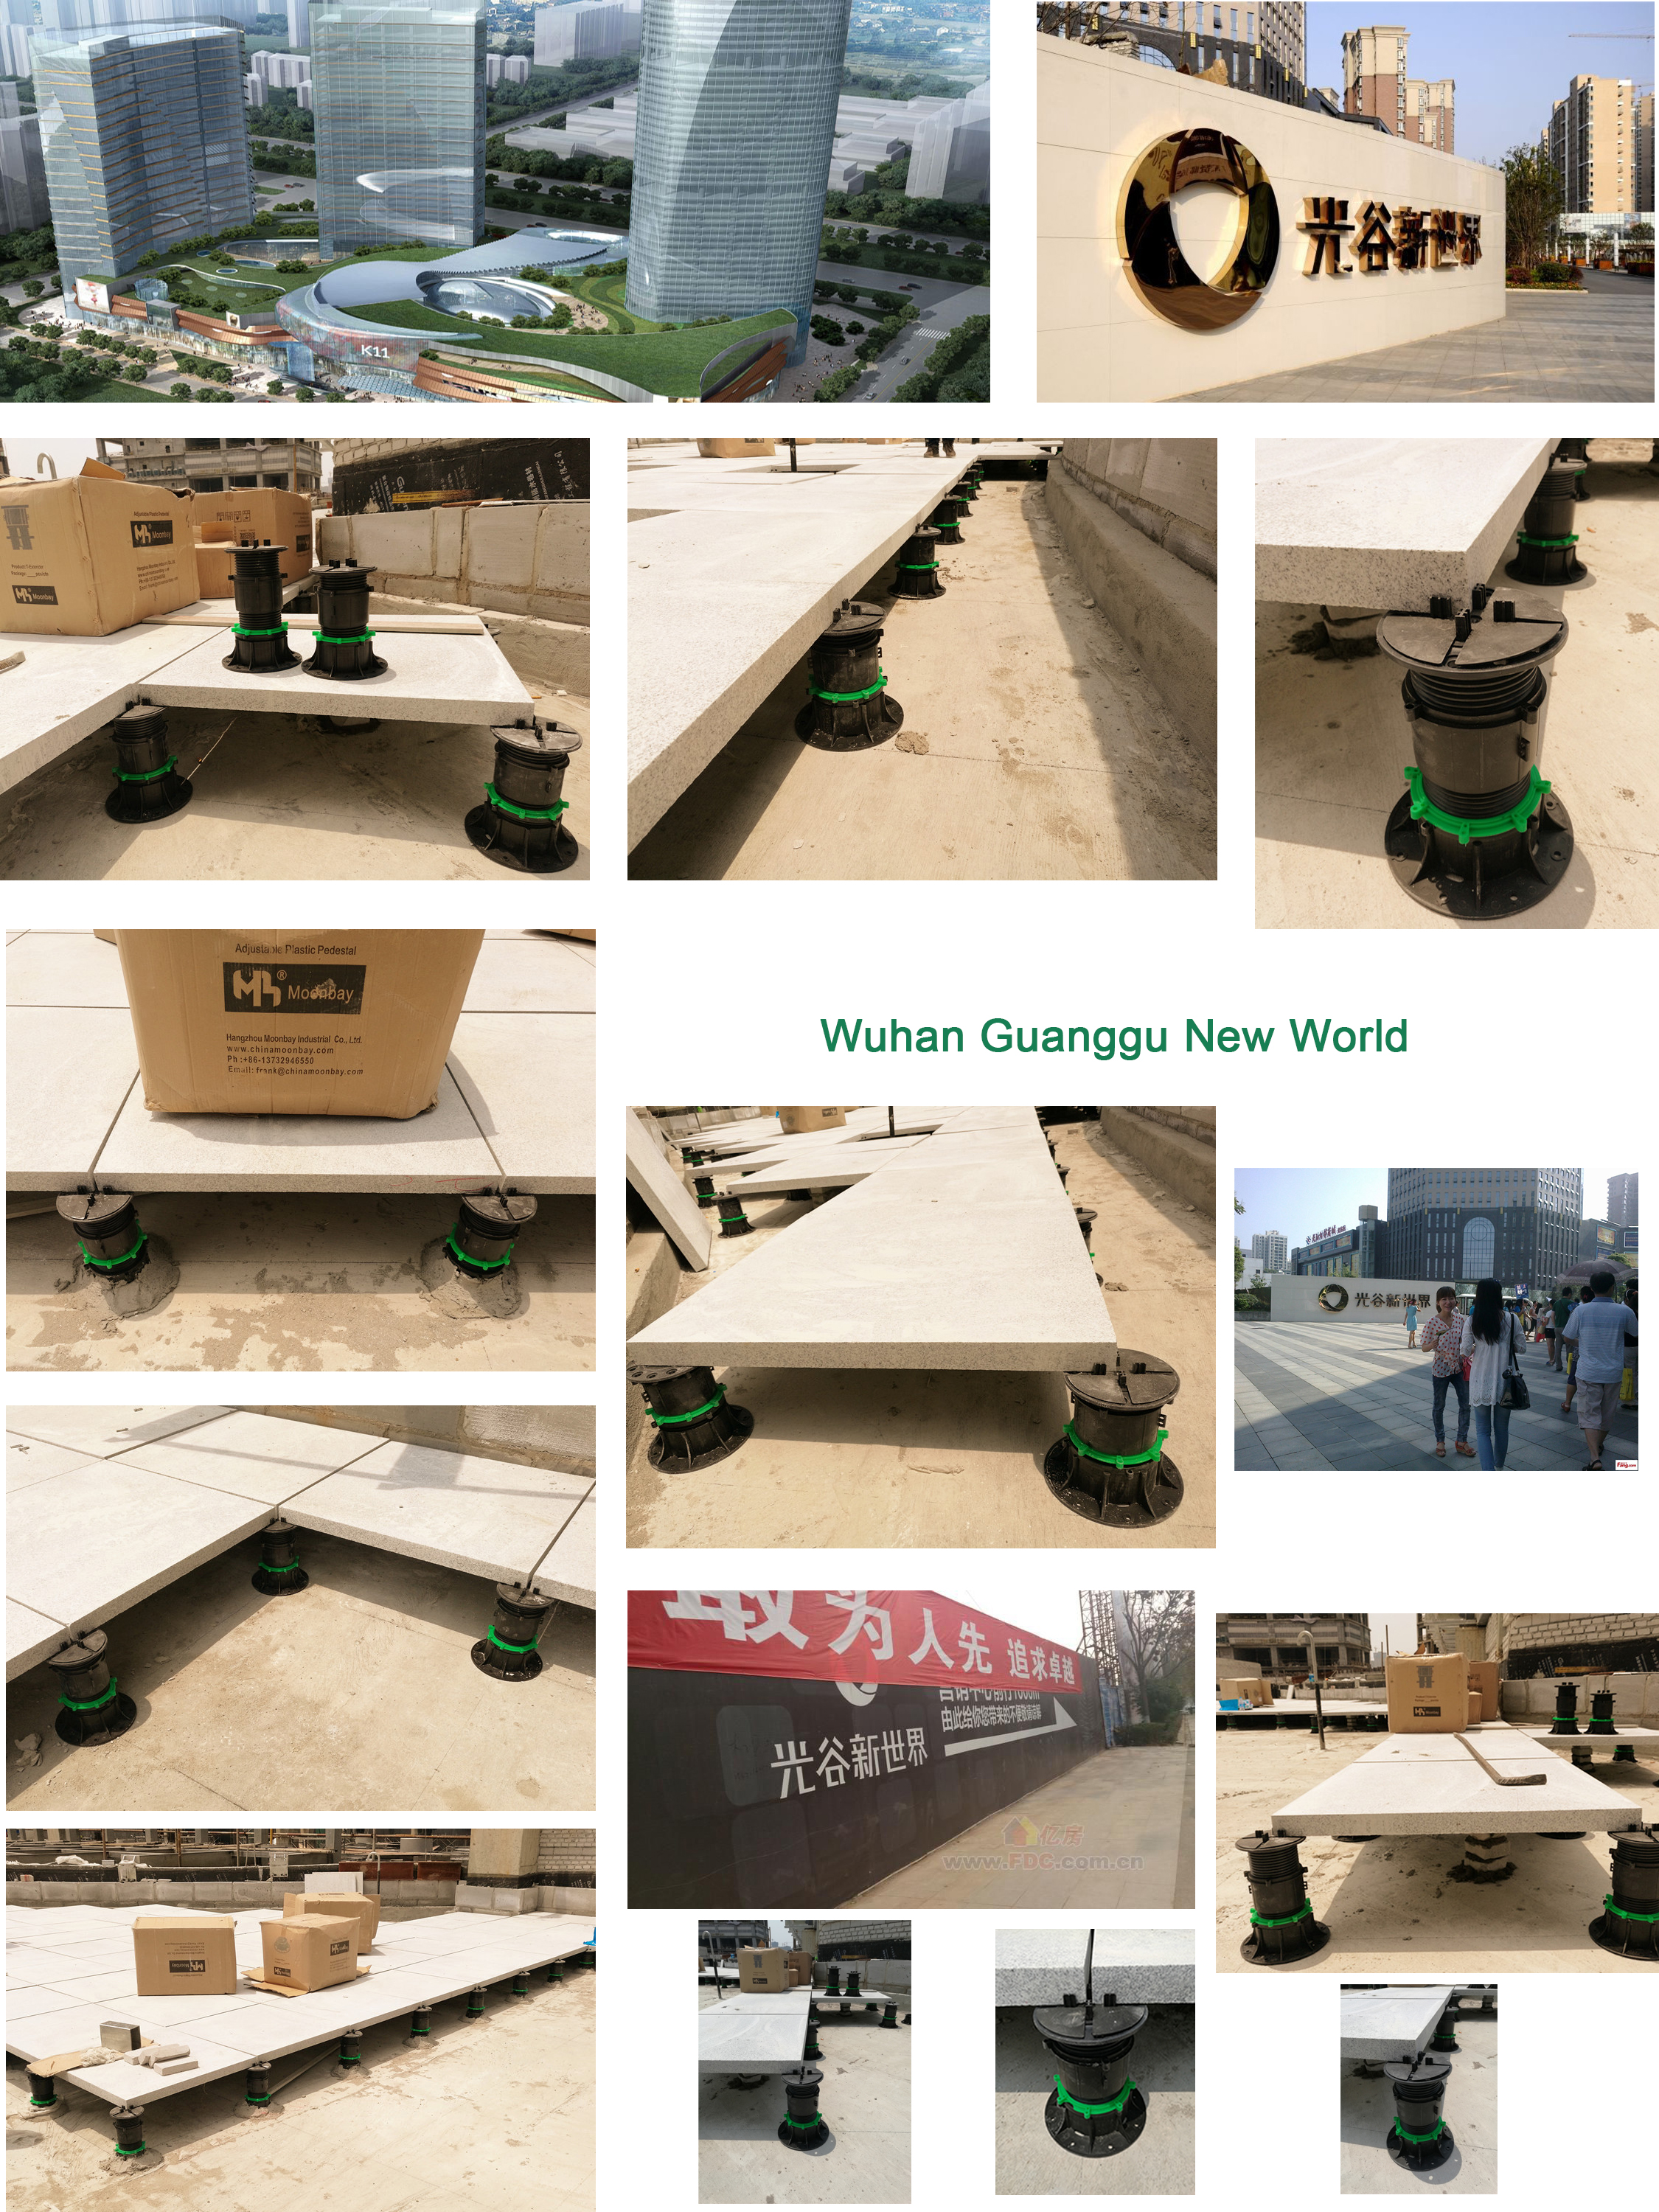 Wuhan Guanggu New World